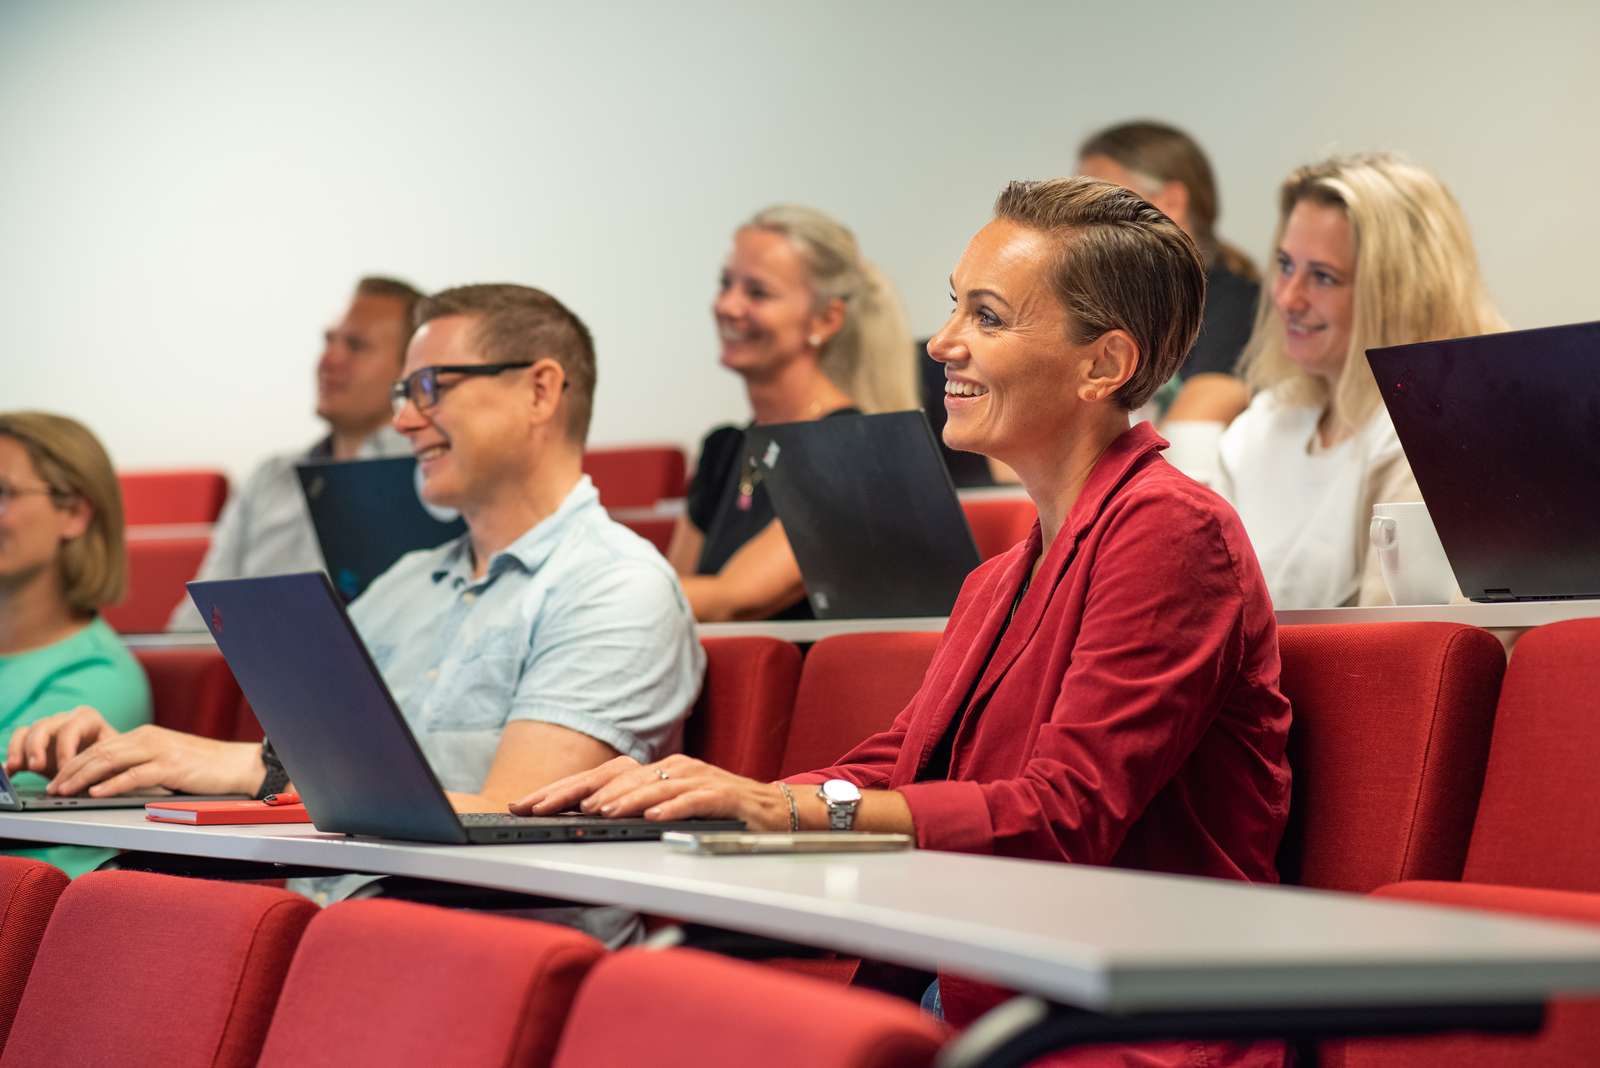 Flere smilende studenter sitter i en forelesningssal med datamaskiner foran seg.